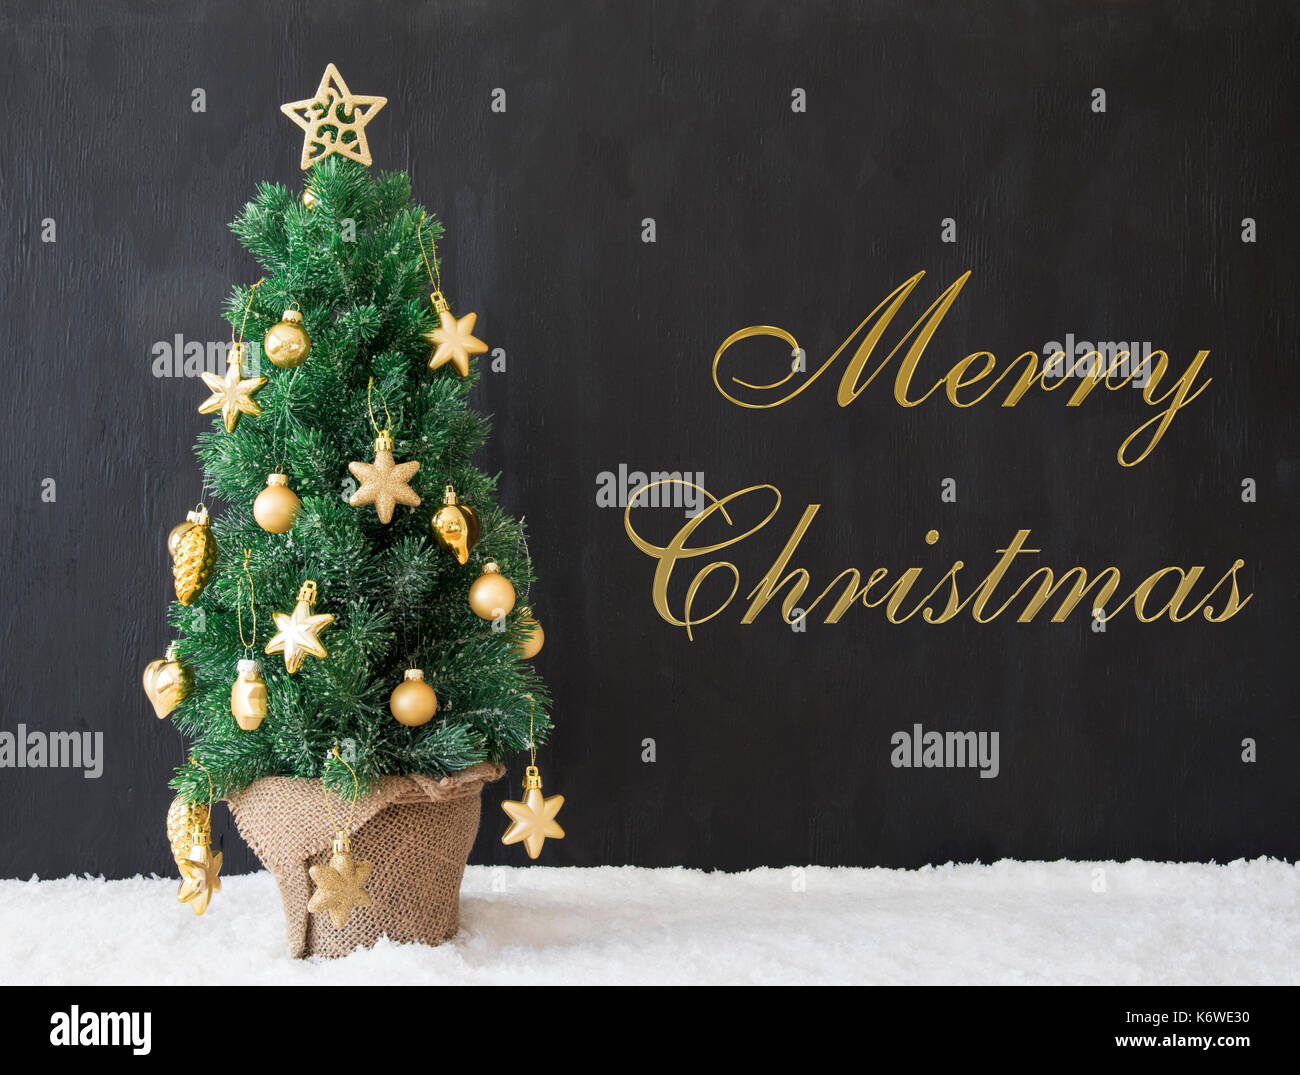 Testo in inglese Merry Christmas. golden albero di Natale decorato con il nero di calcestruzzo o cemento. sfondo moderno stile urbano con la neve Foto Stock